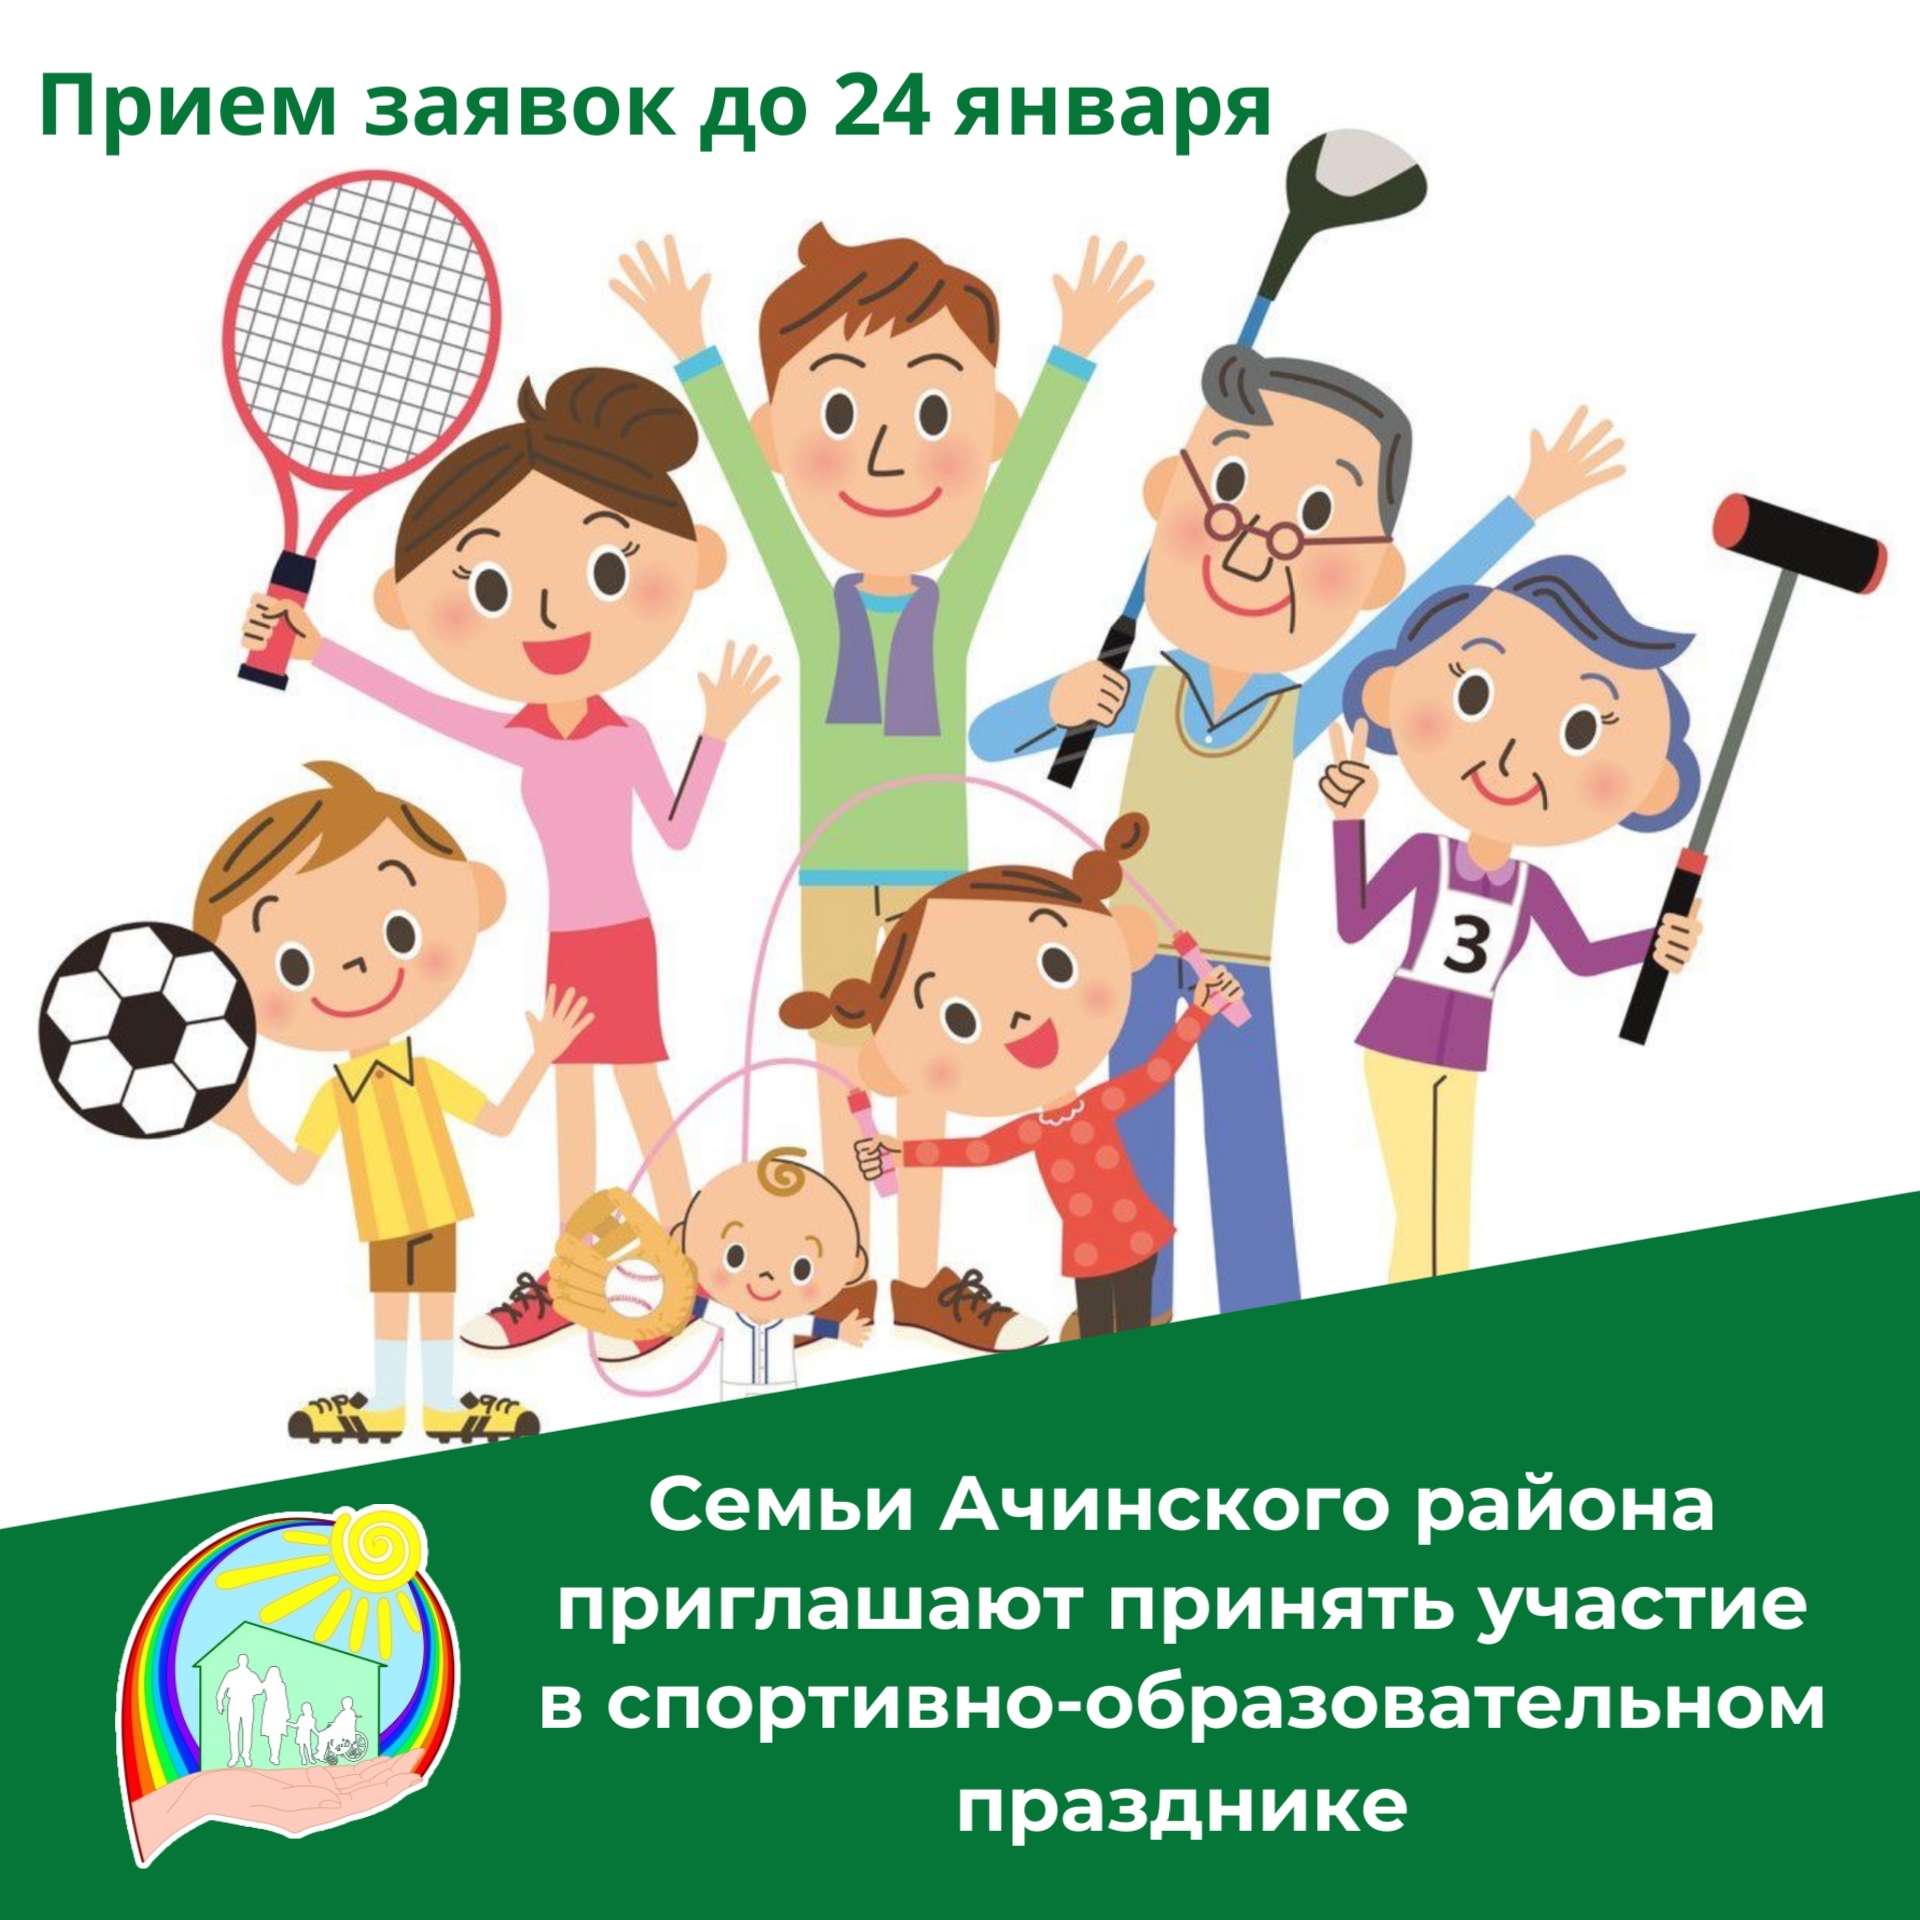 Семьи Ачинского района приглашают принять участие в спортивно-образовательном празднике.